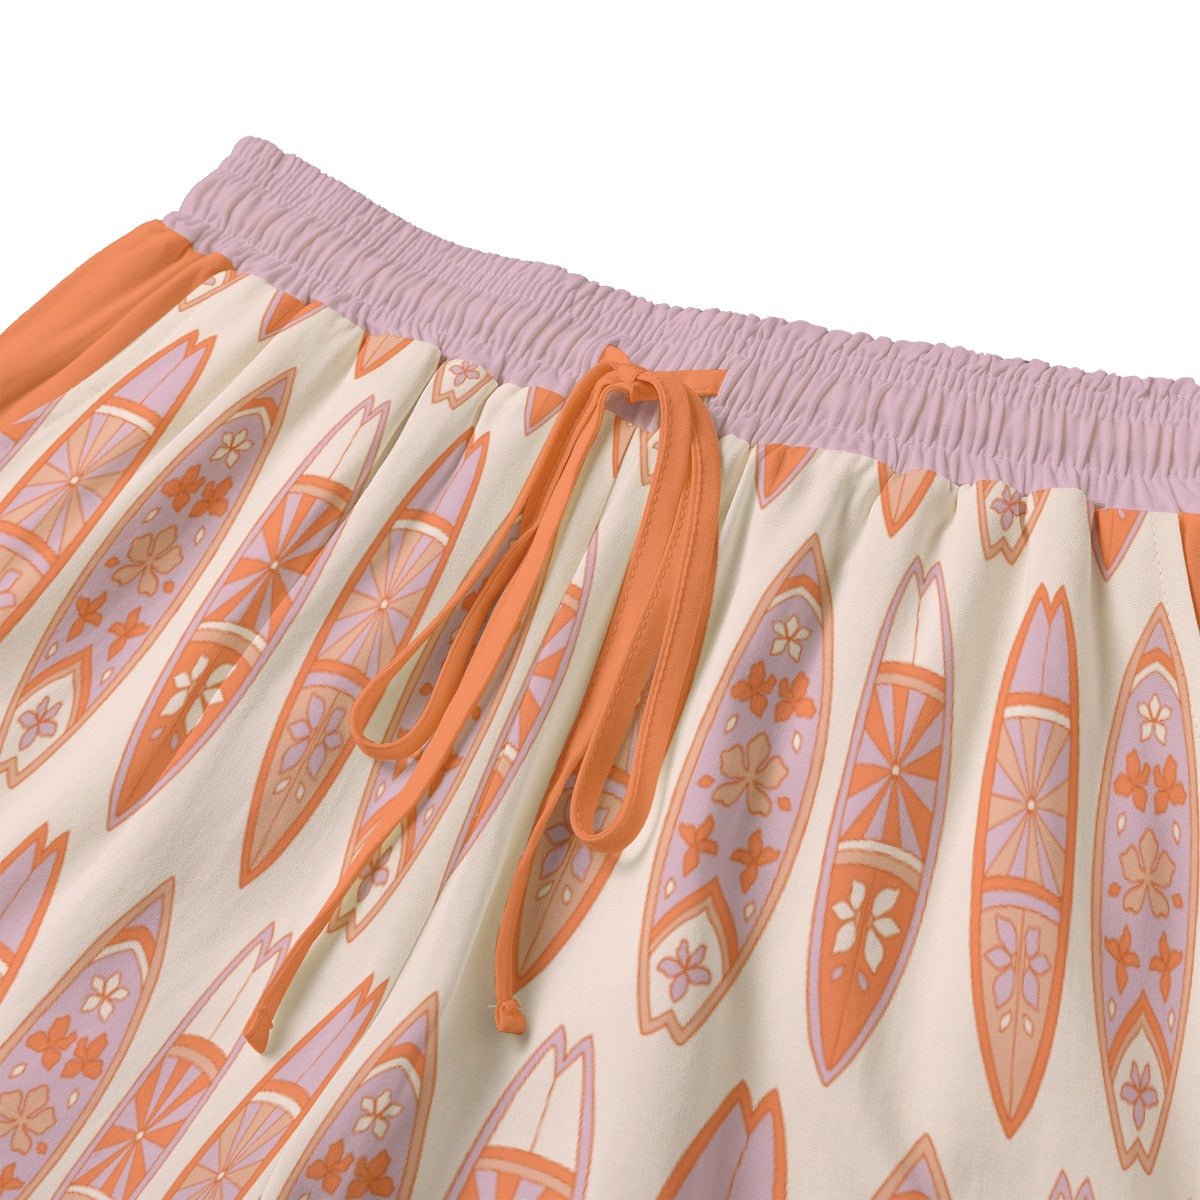 Aloha Lili Shorts With Drawstring | Rayon - Mack & Harvie